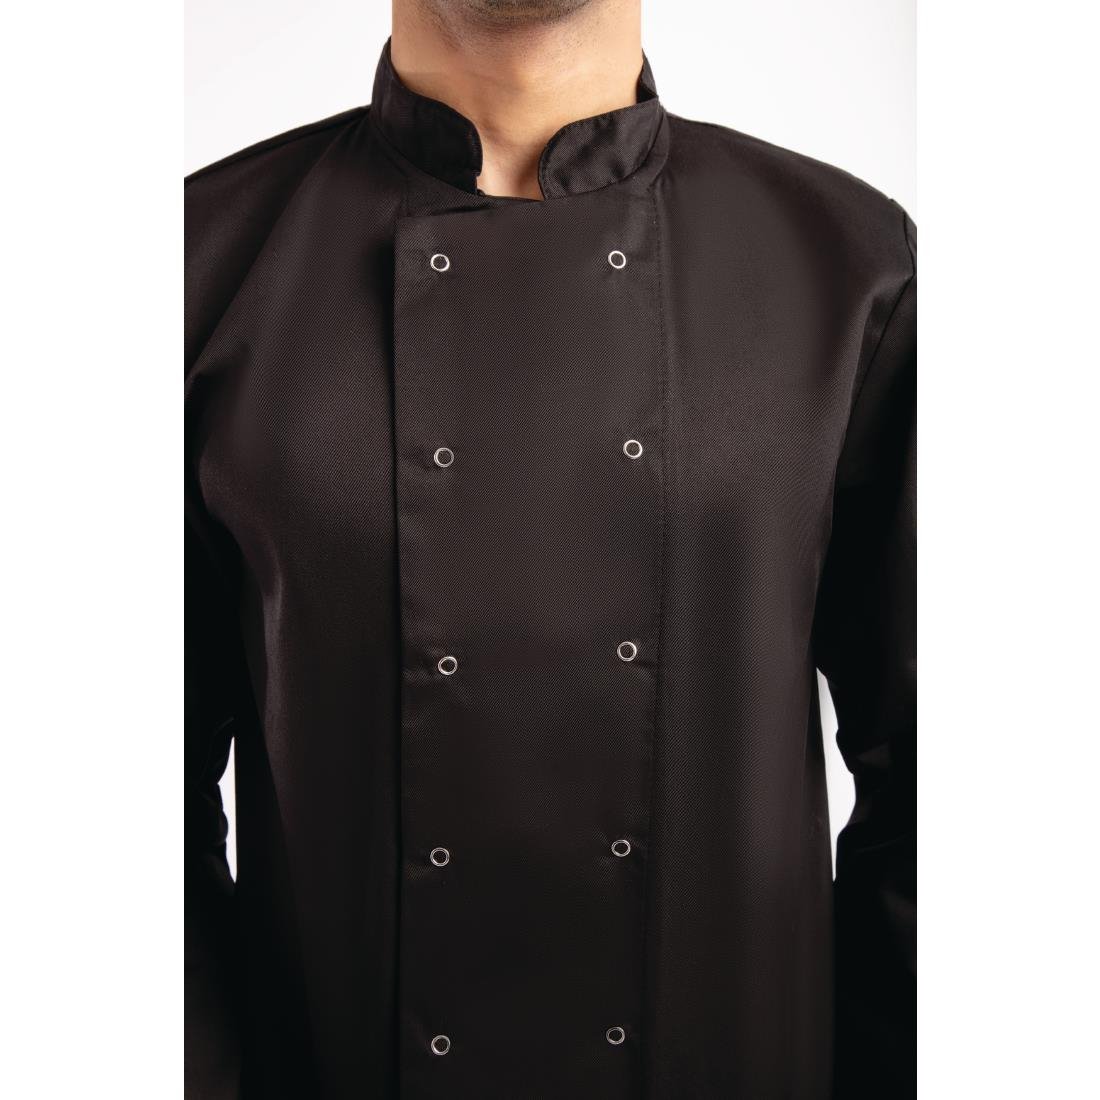 Whites Vegas Unisex Black Long Sleeve Chef Jacket